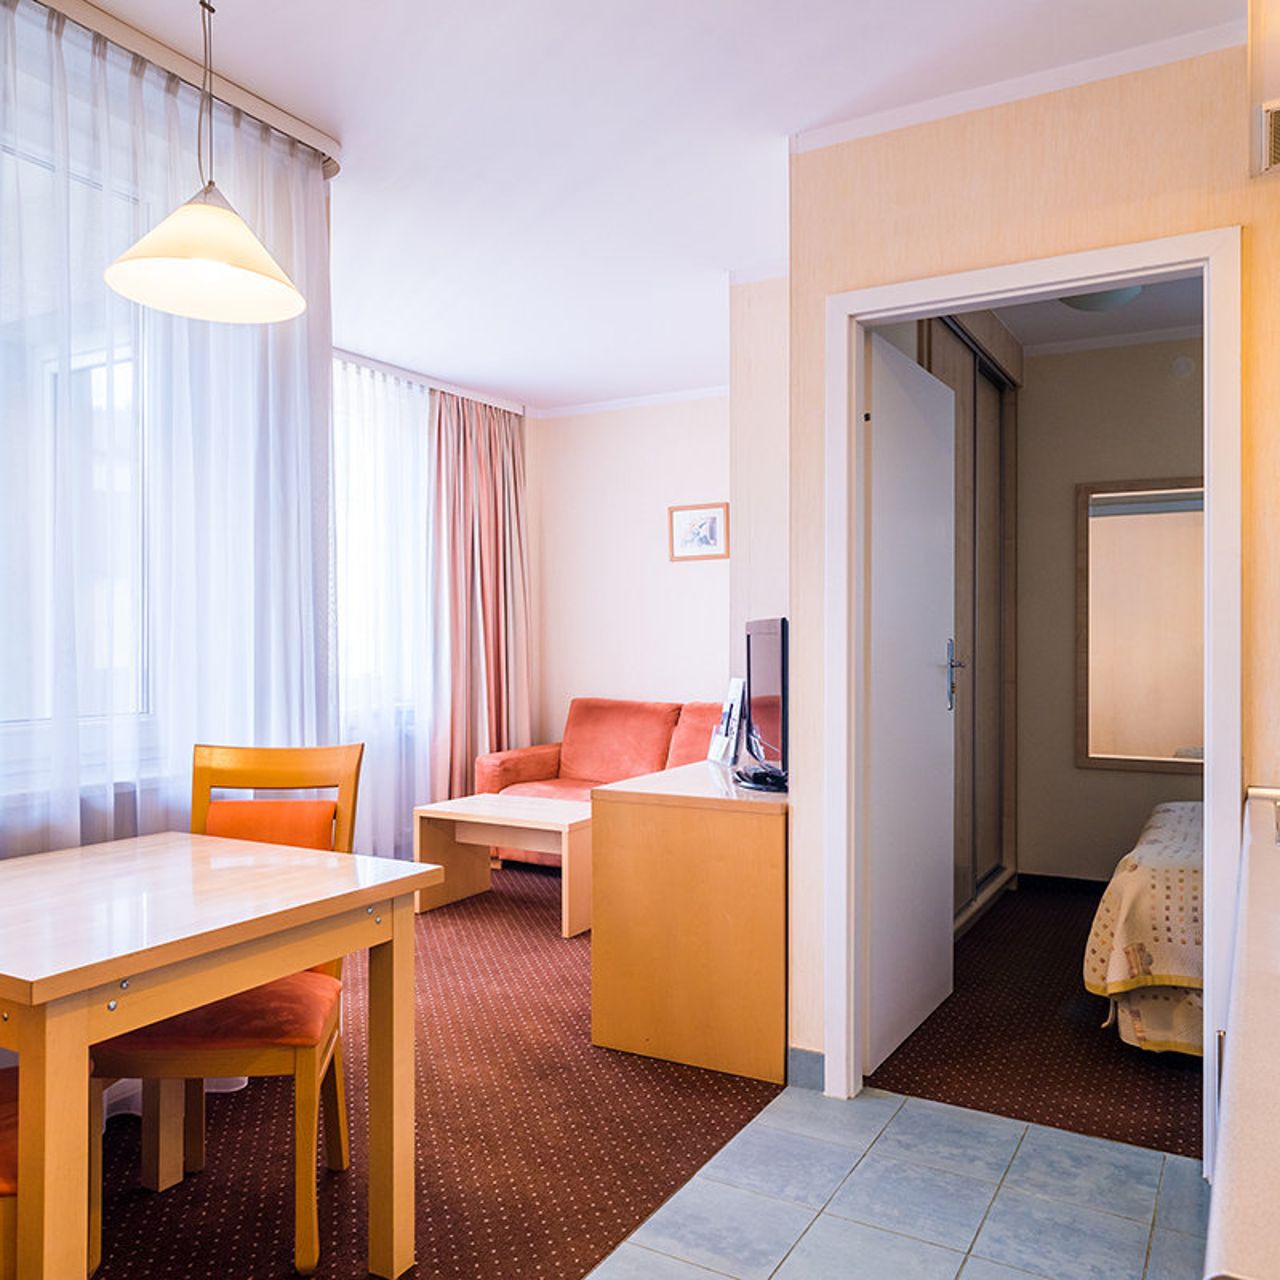 Hotel Apartamenty Zgoda Warszawa by DeSilva - Warsaw - Great prices at  HOTEL INFO